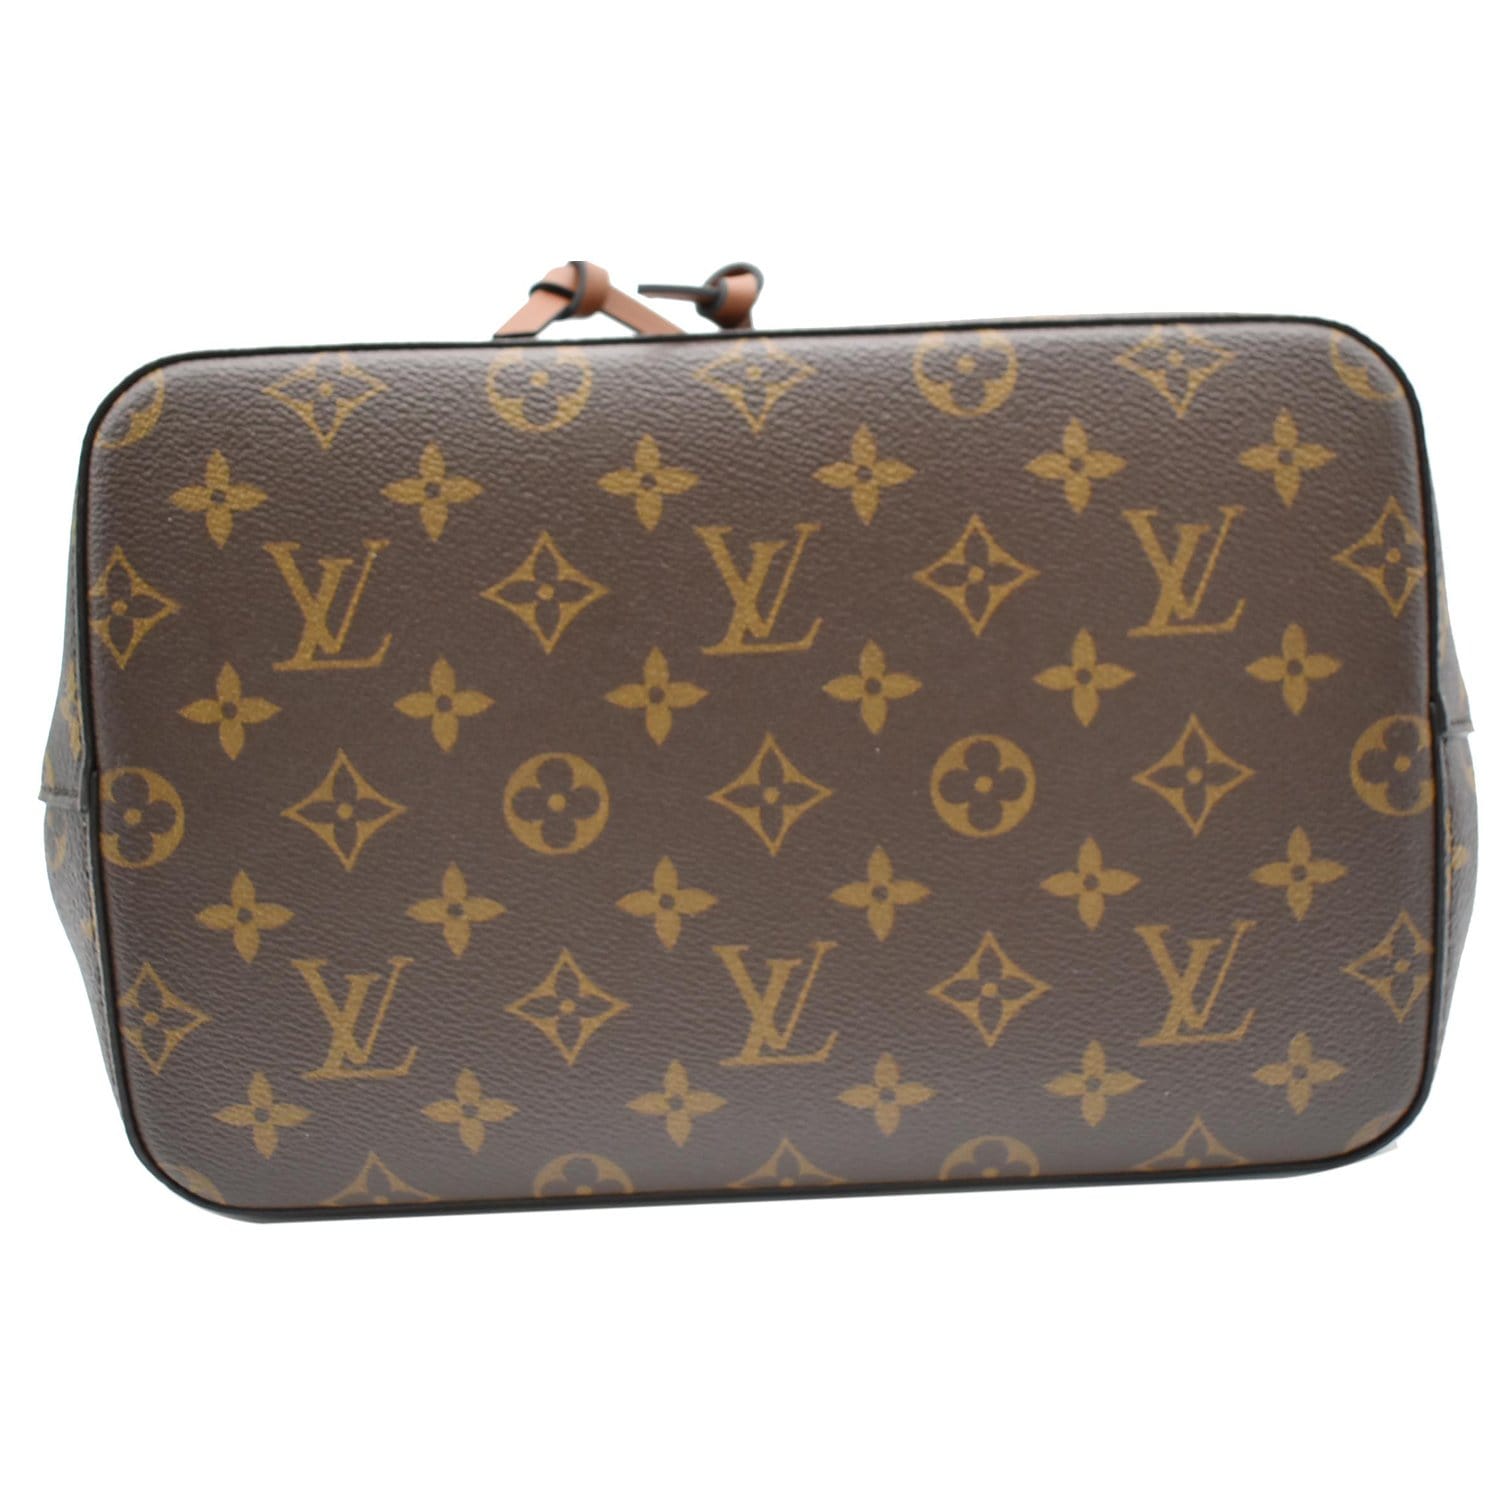 Louis Vuitton, Bags, Authentic Louis Vuitton Neonoe In Monogram Canvas  Caramel